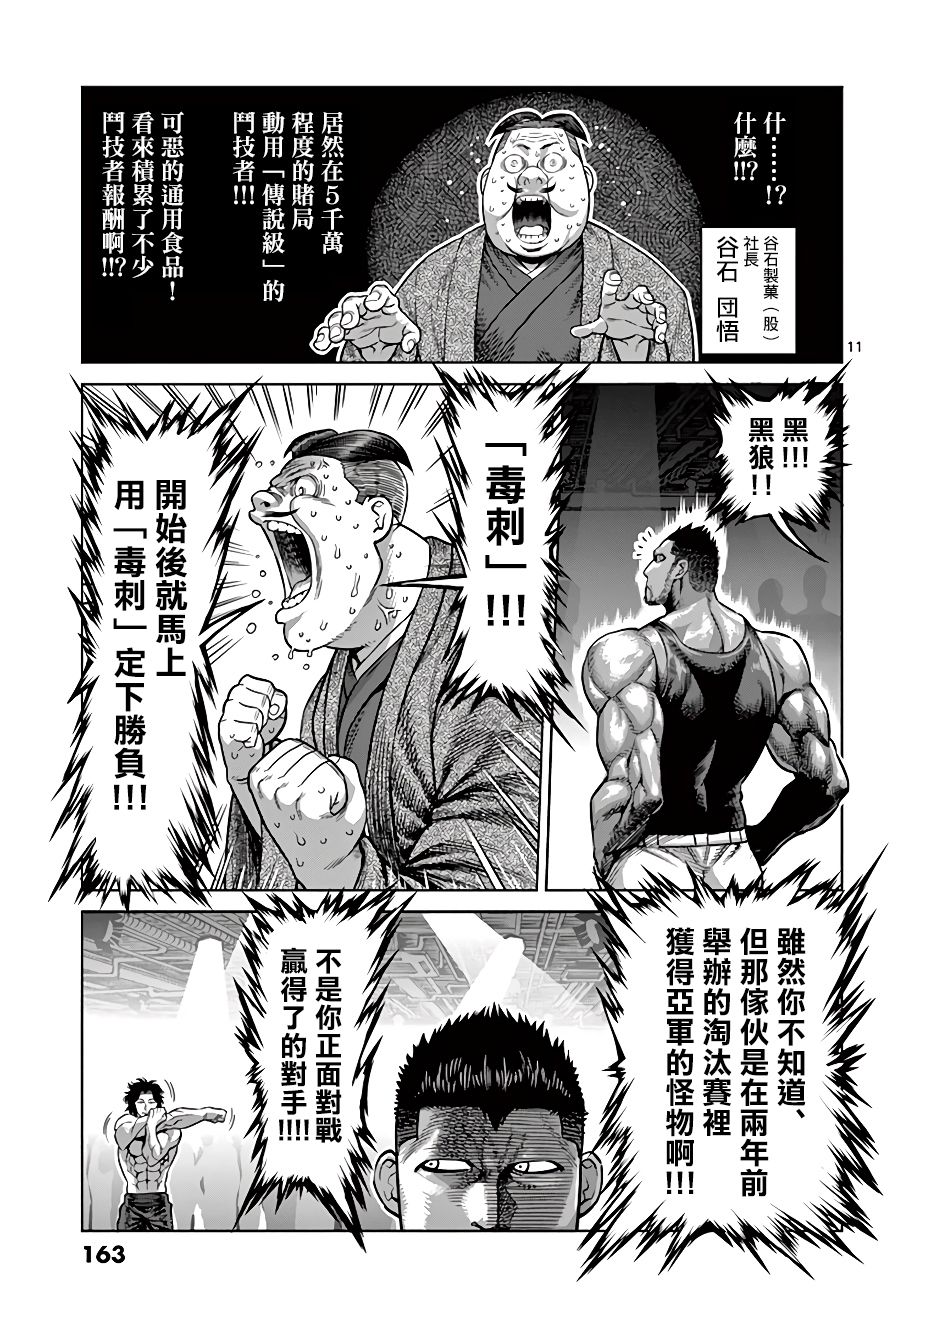 【漫画】拳愿奥米迦 #06 - acfun弹幕网 - 认真你